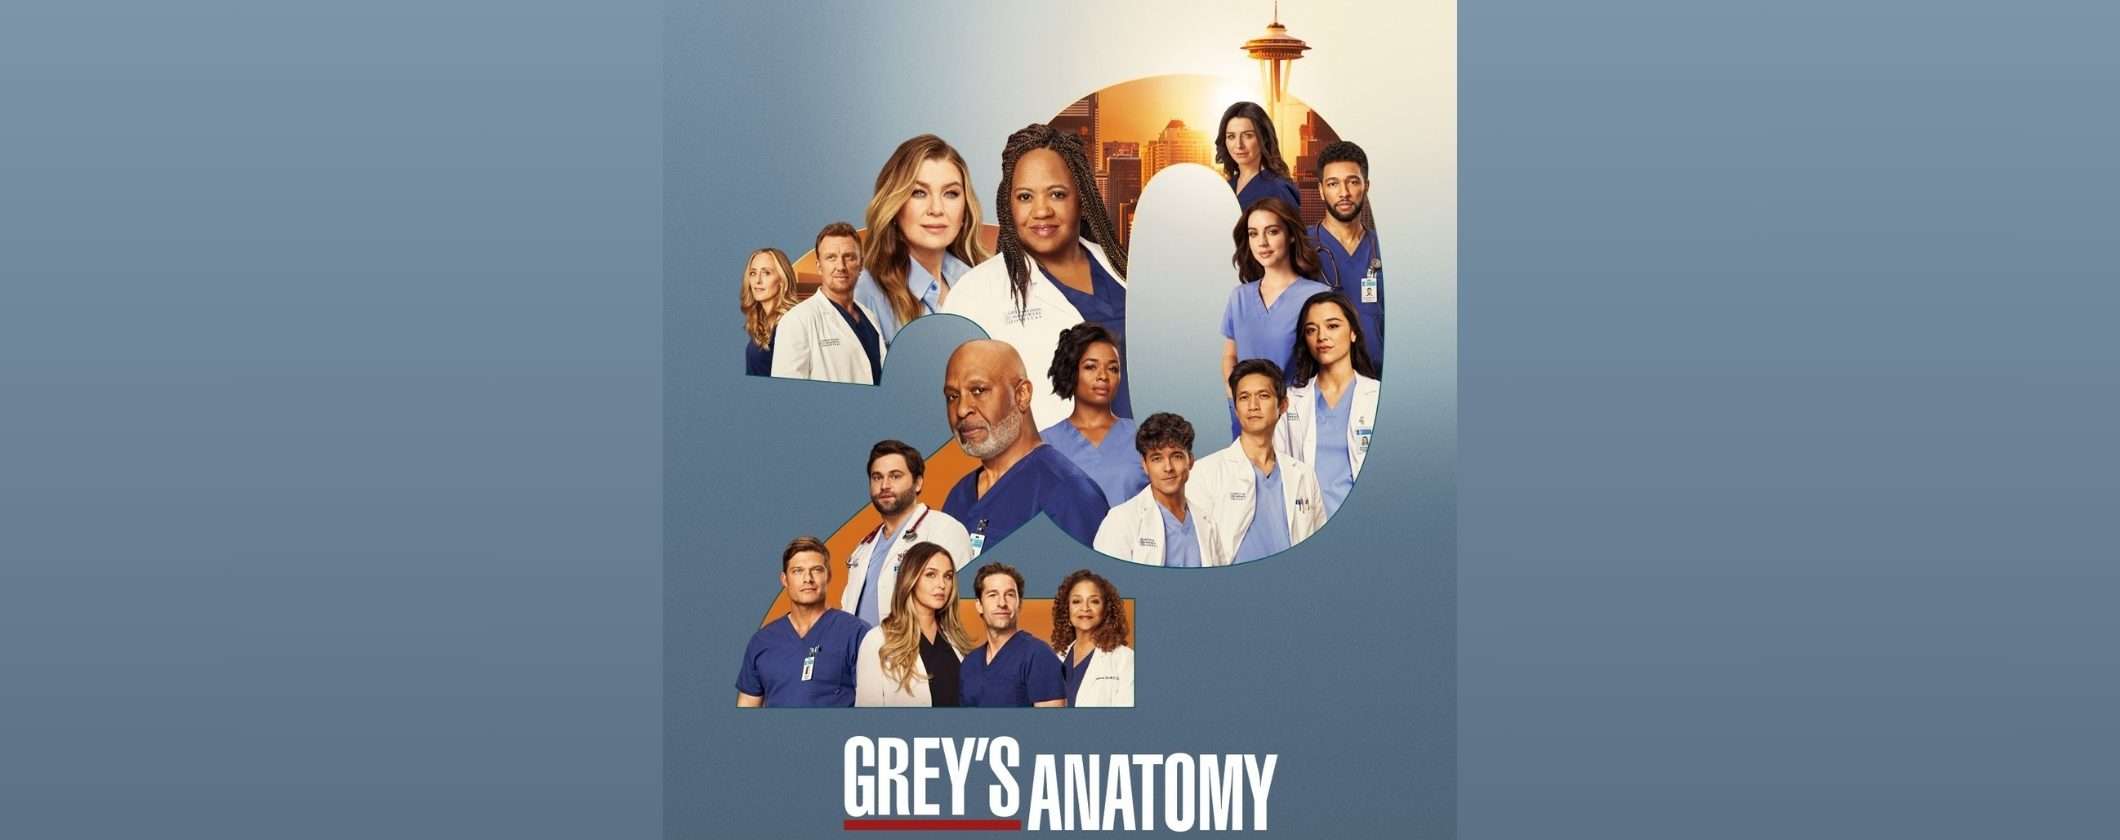 Guarda Grey's Anatomy 20 su Disney+ con 2 mesi GRATIS